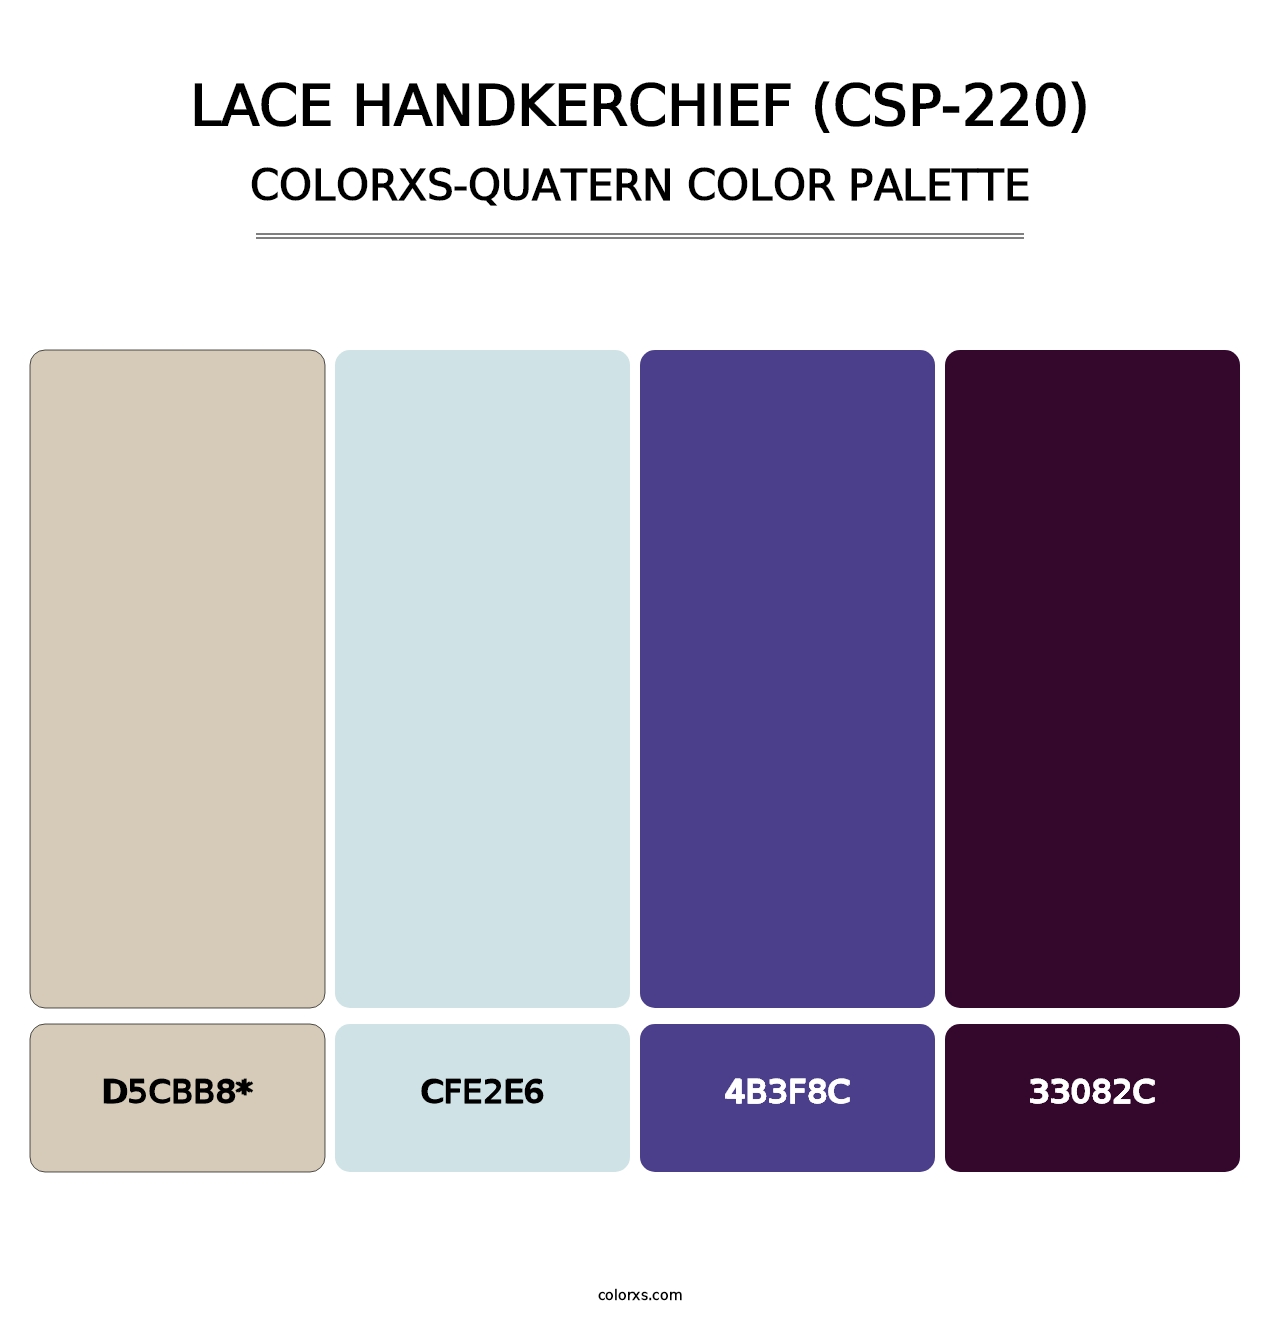 Lace Handkerchief (CSP-220) - Colorxs Quatern Palette